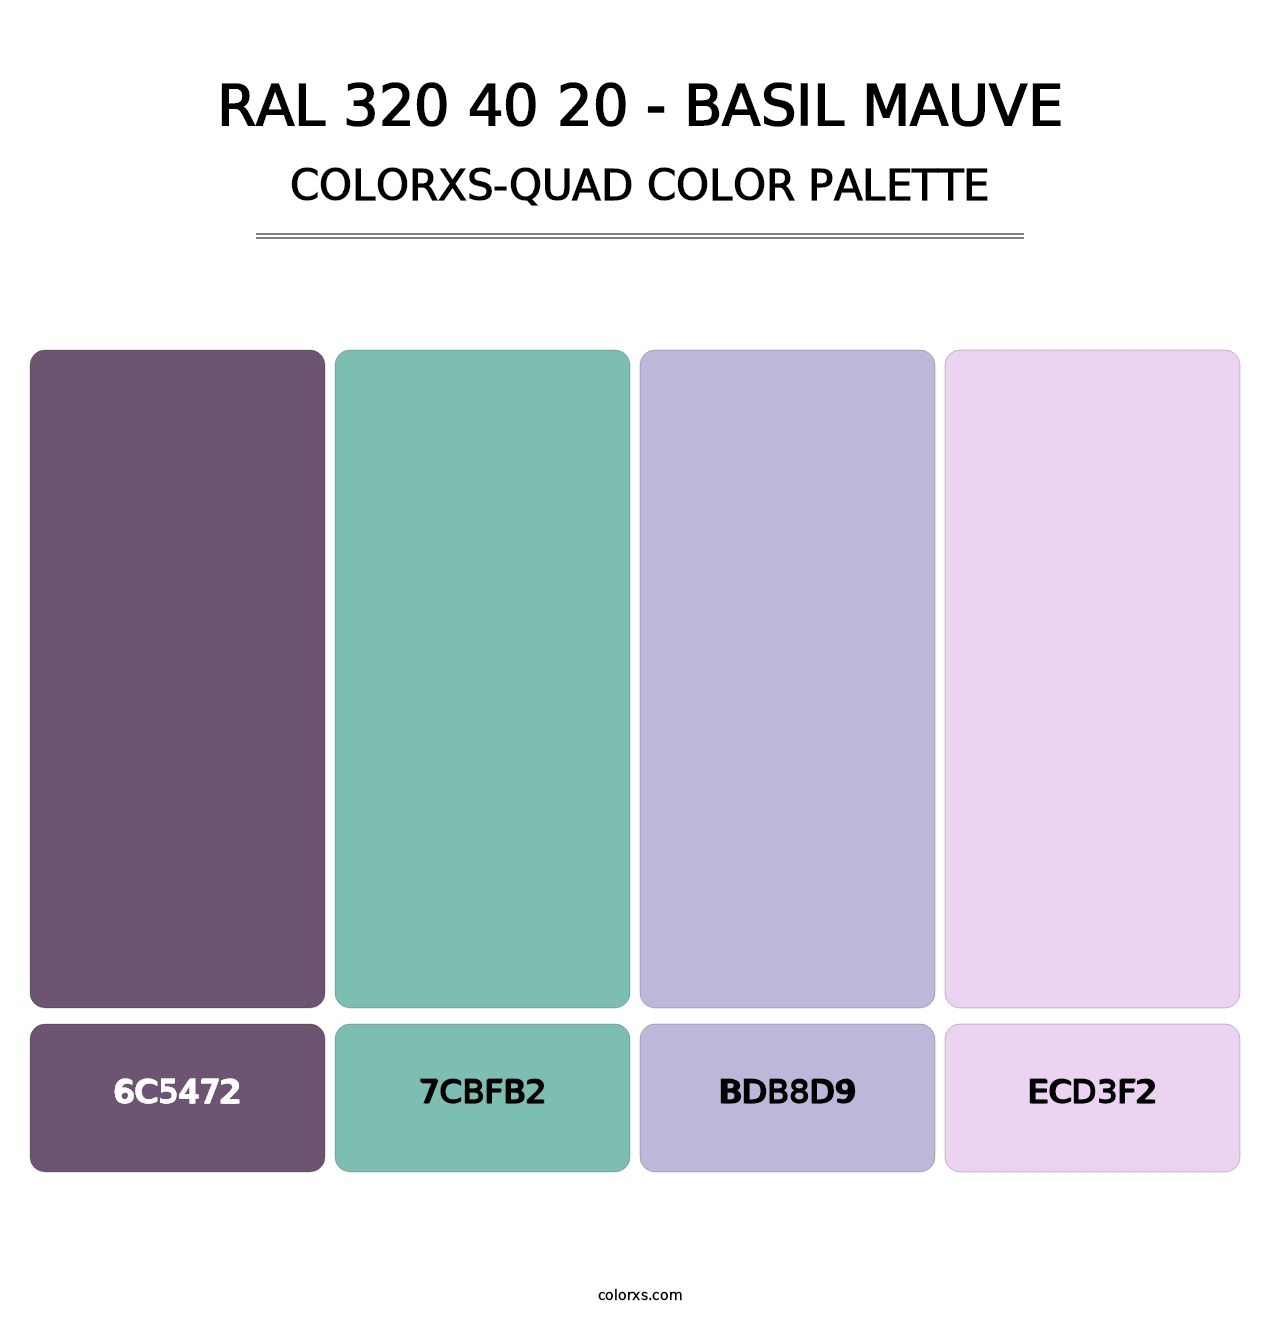 RAL 320 40 20 - Basil Mauve - Colorxs Quad Palette